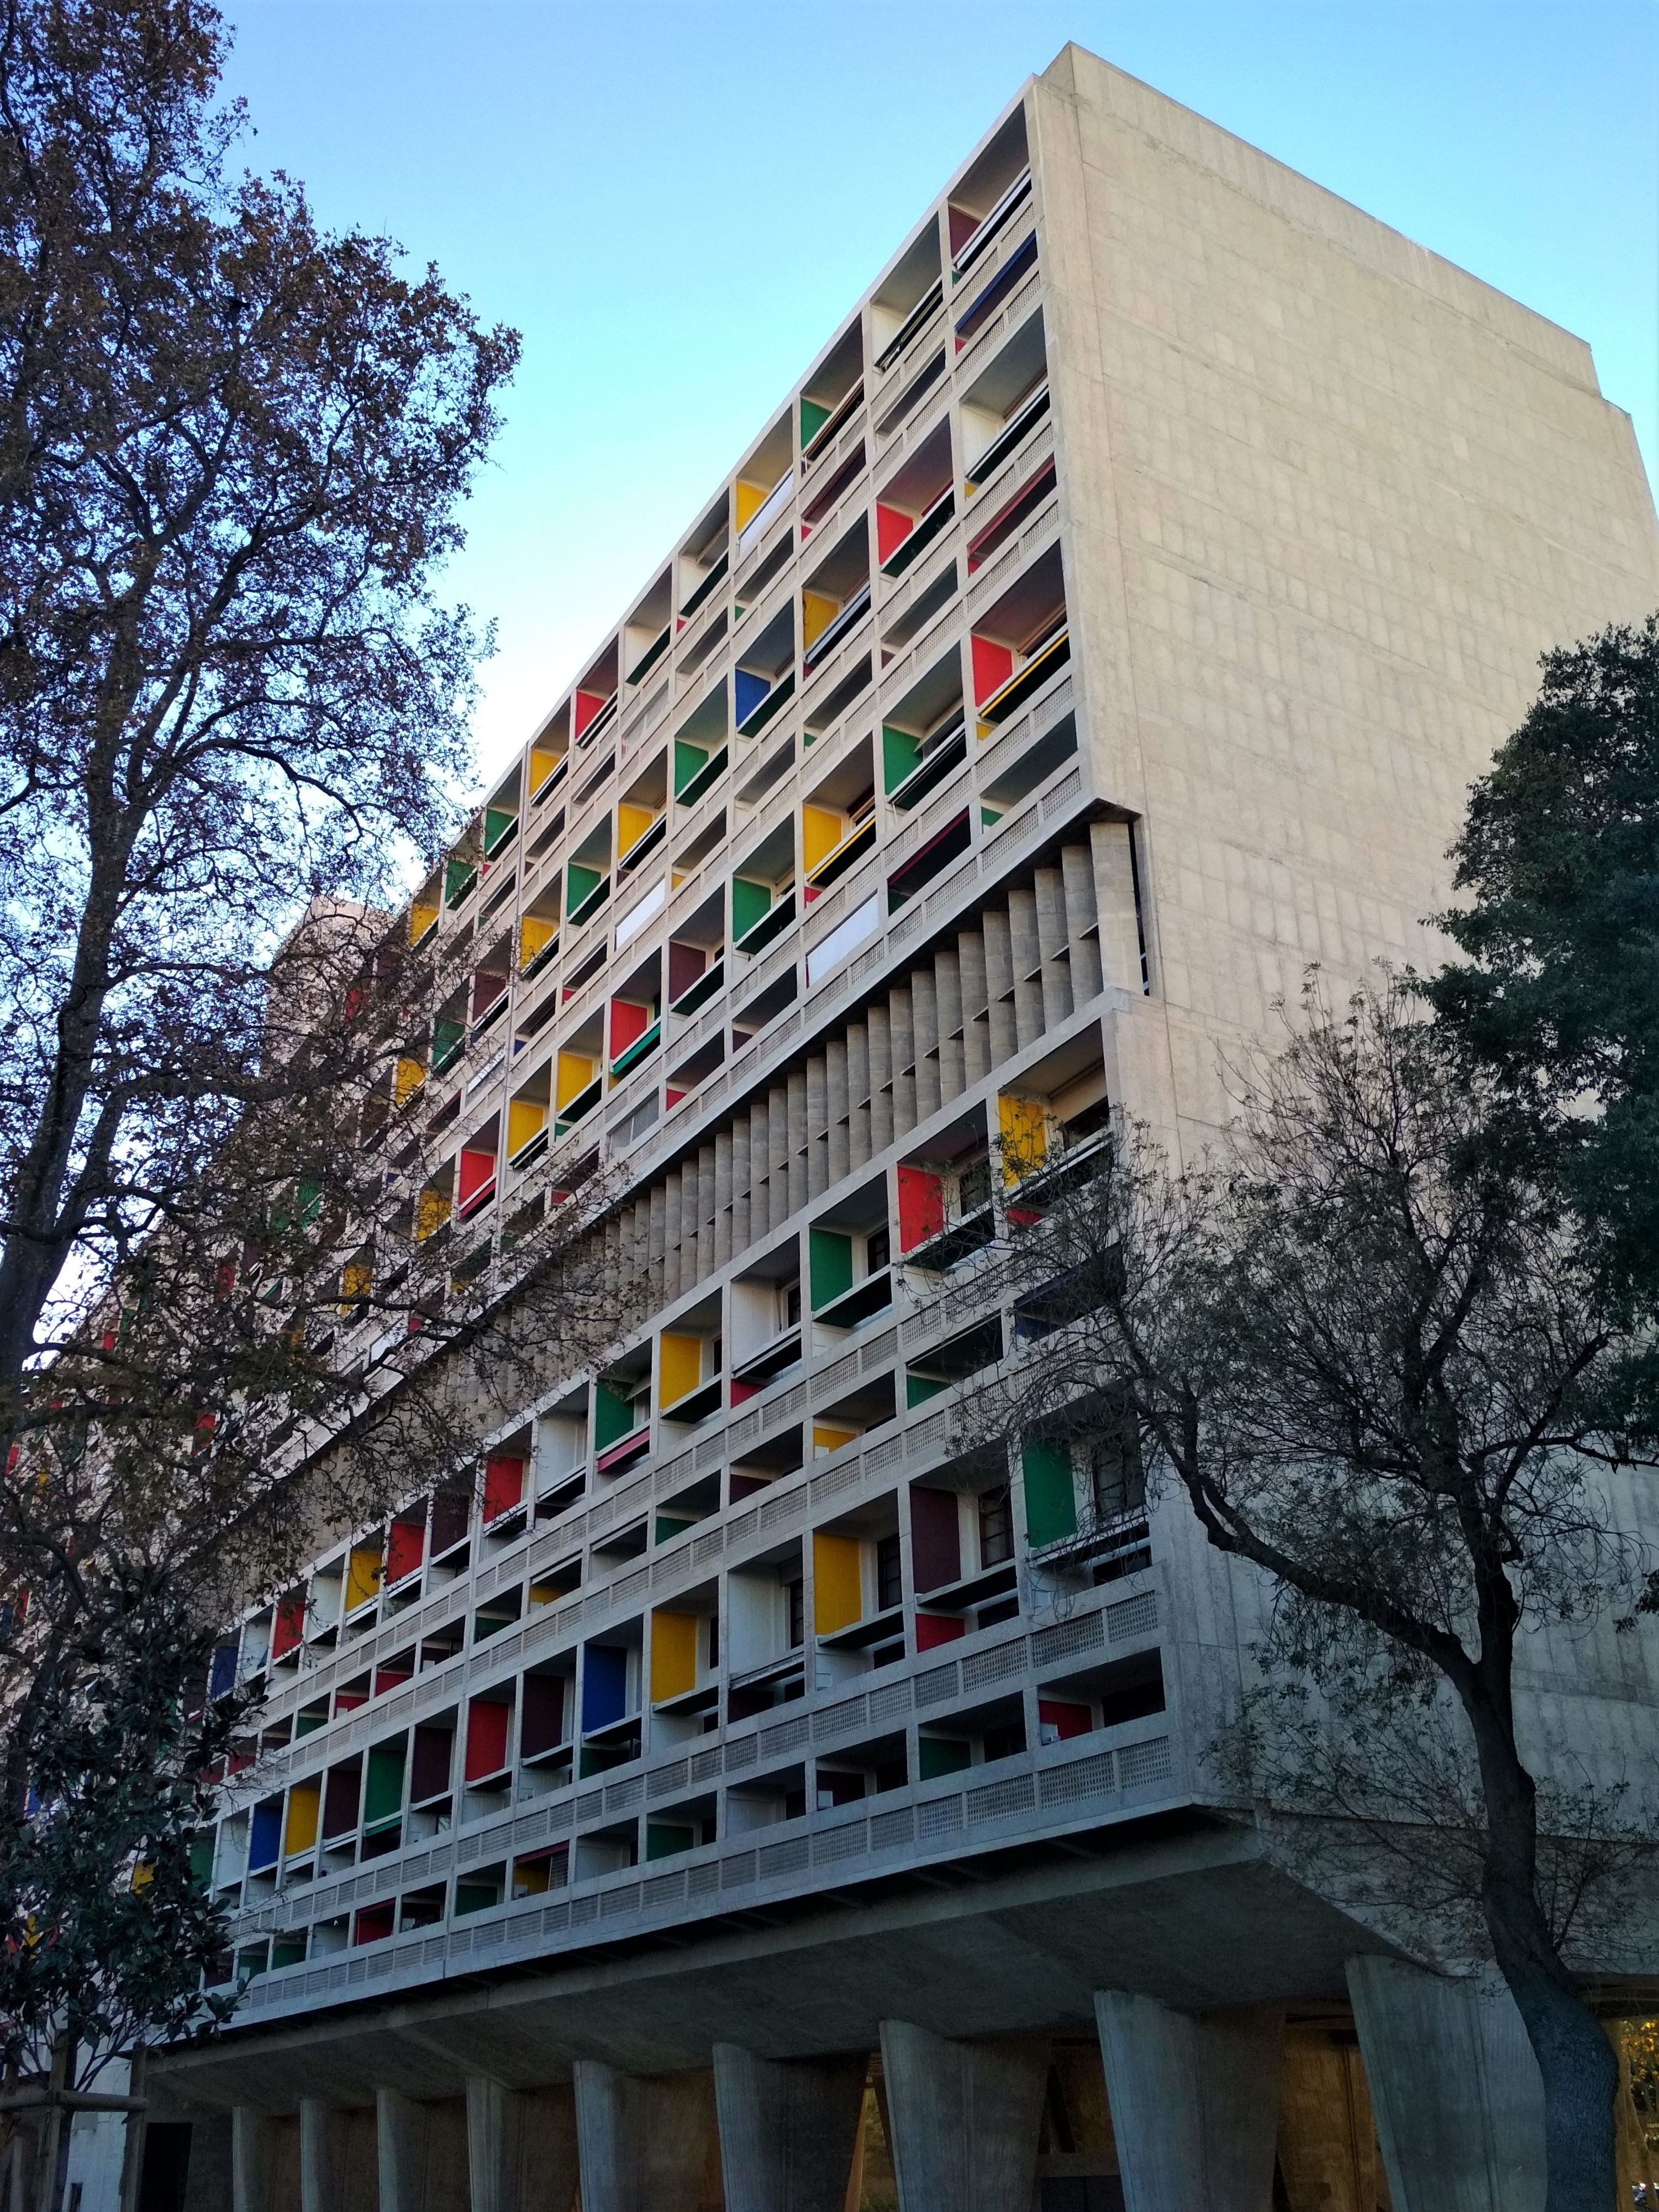 Cité Radieuse Le Corbusier, Marseille